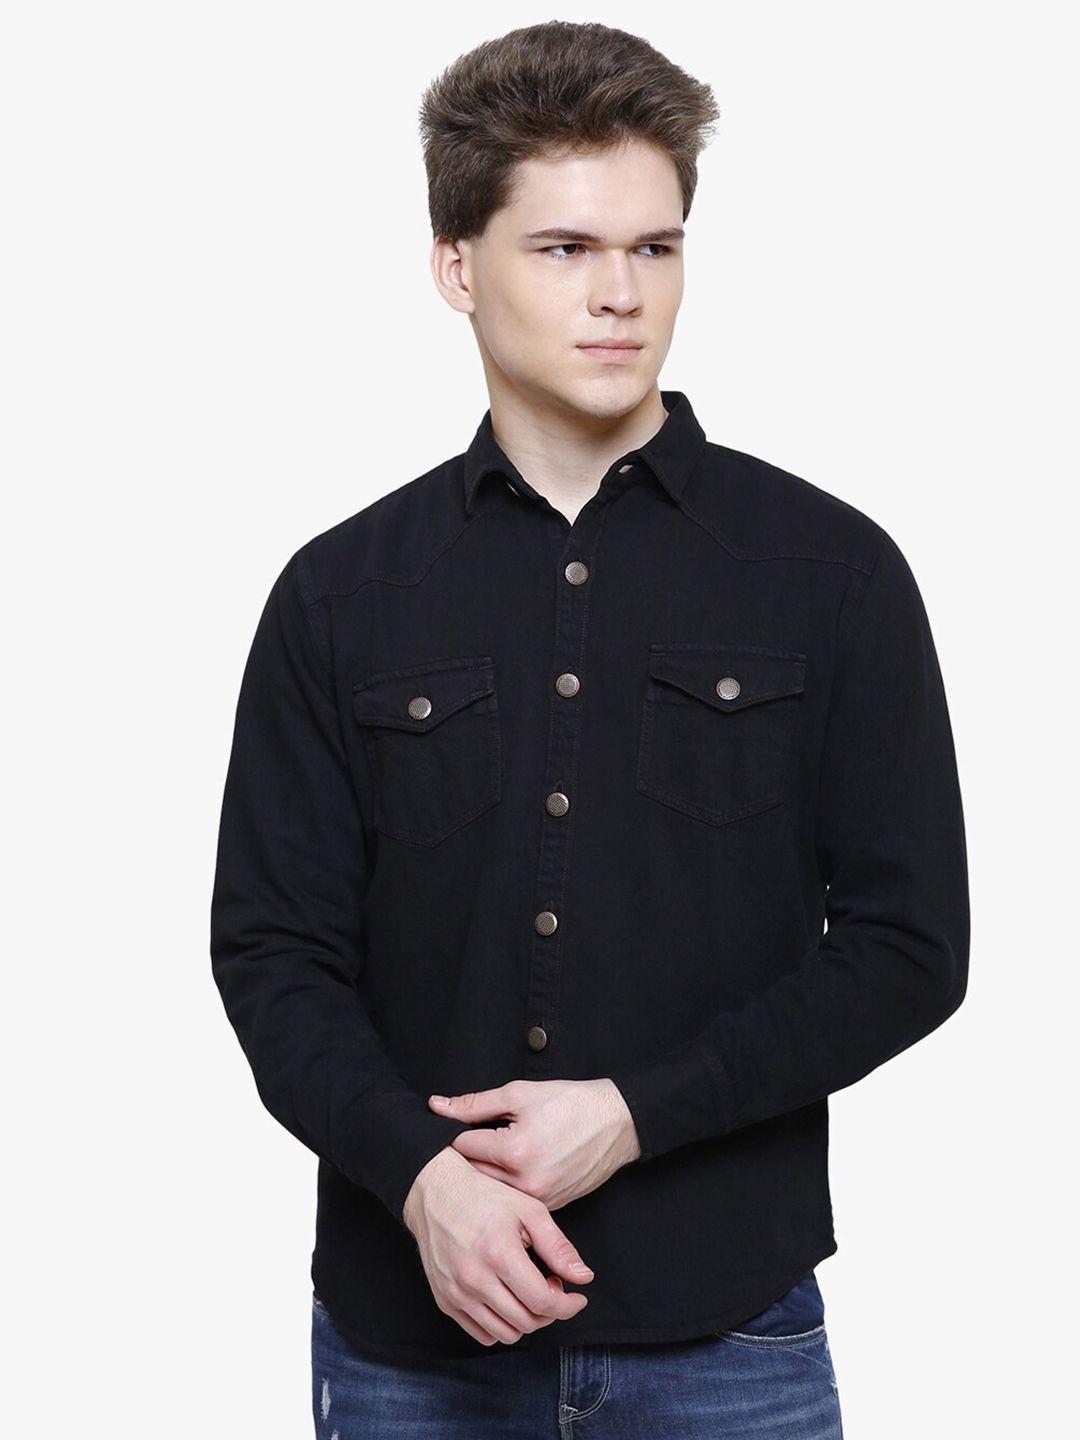 kuons-avenue-men-black-smart-slim-fit-cotton-casual-shirt